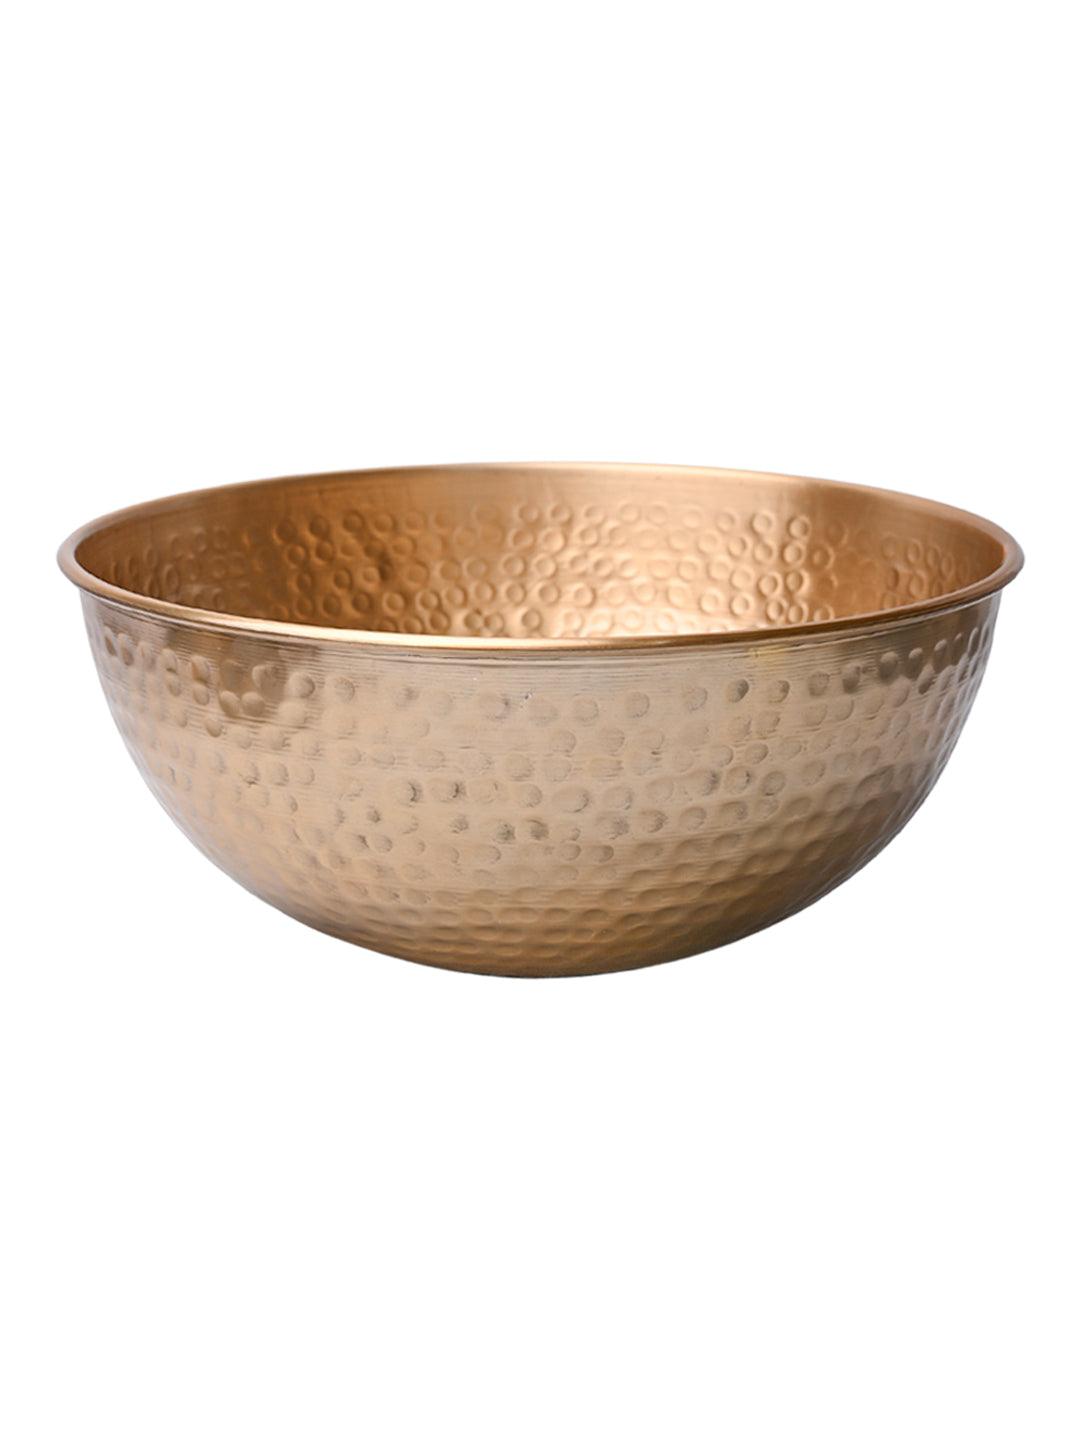 VON CASA Decorative Bowl